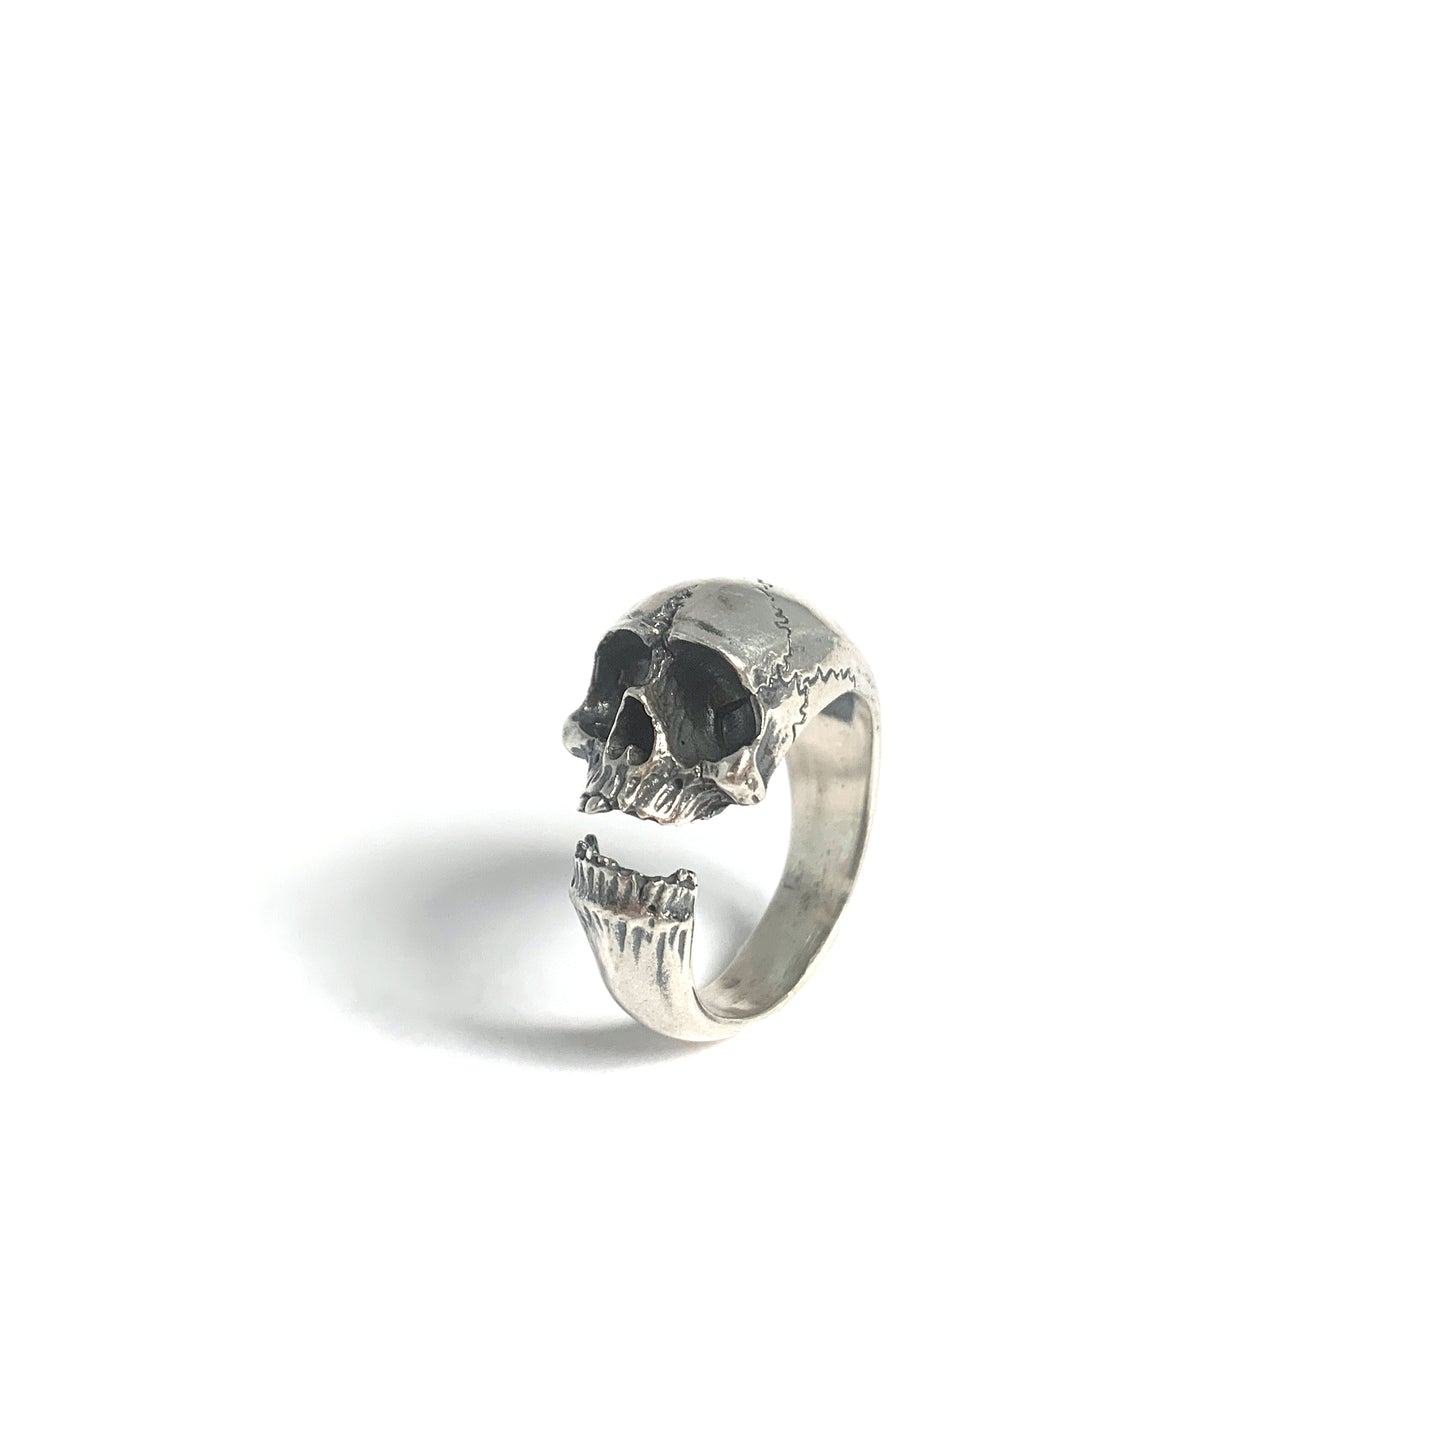 Wraparound Memento Mori Skull Ring